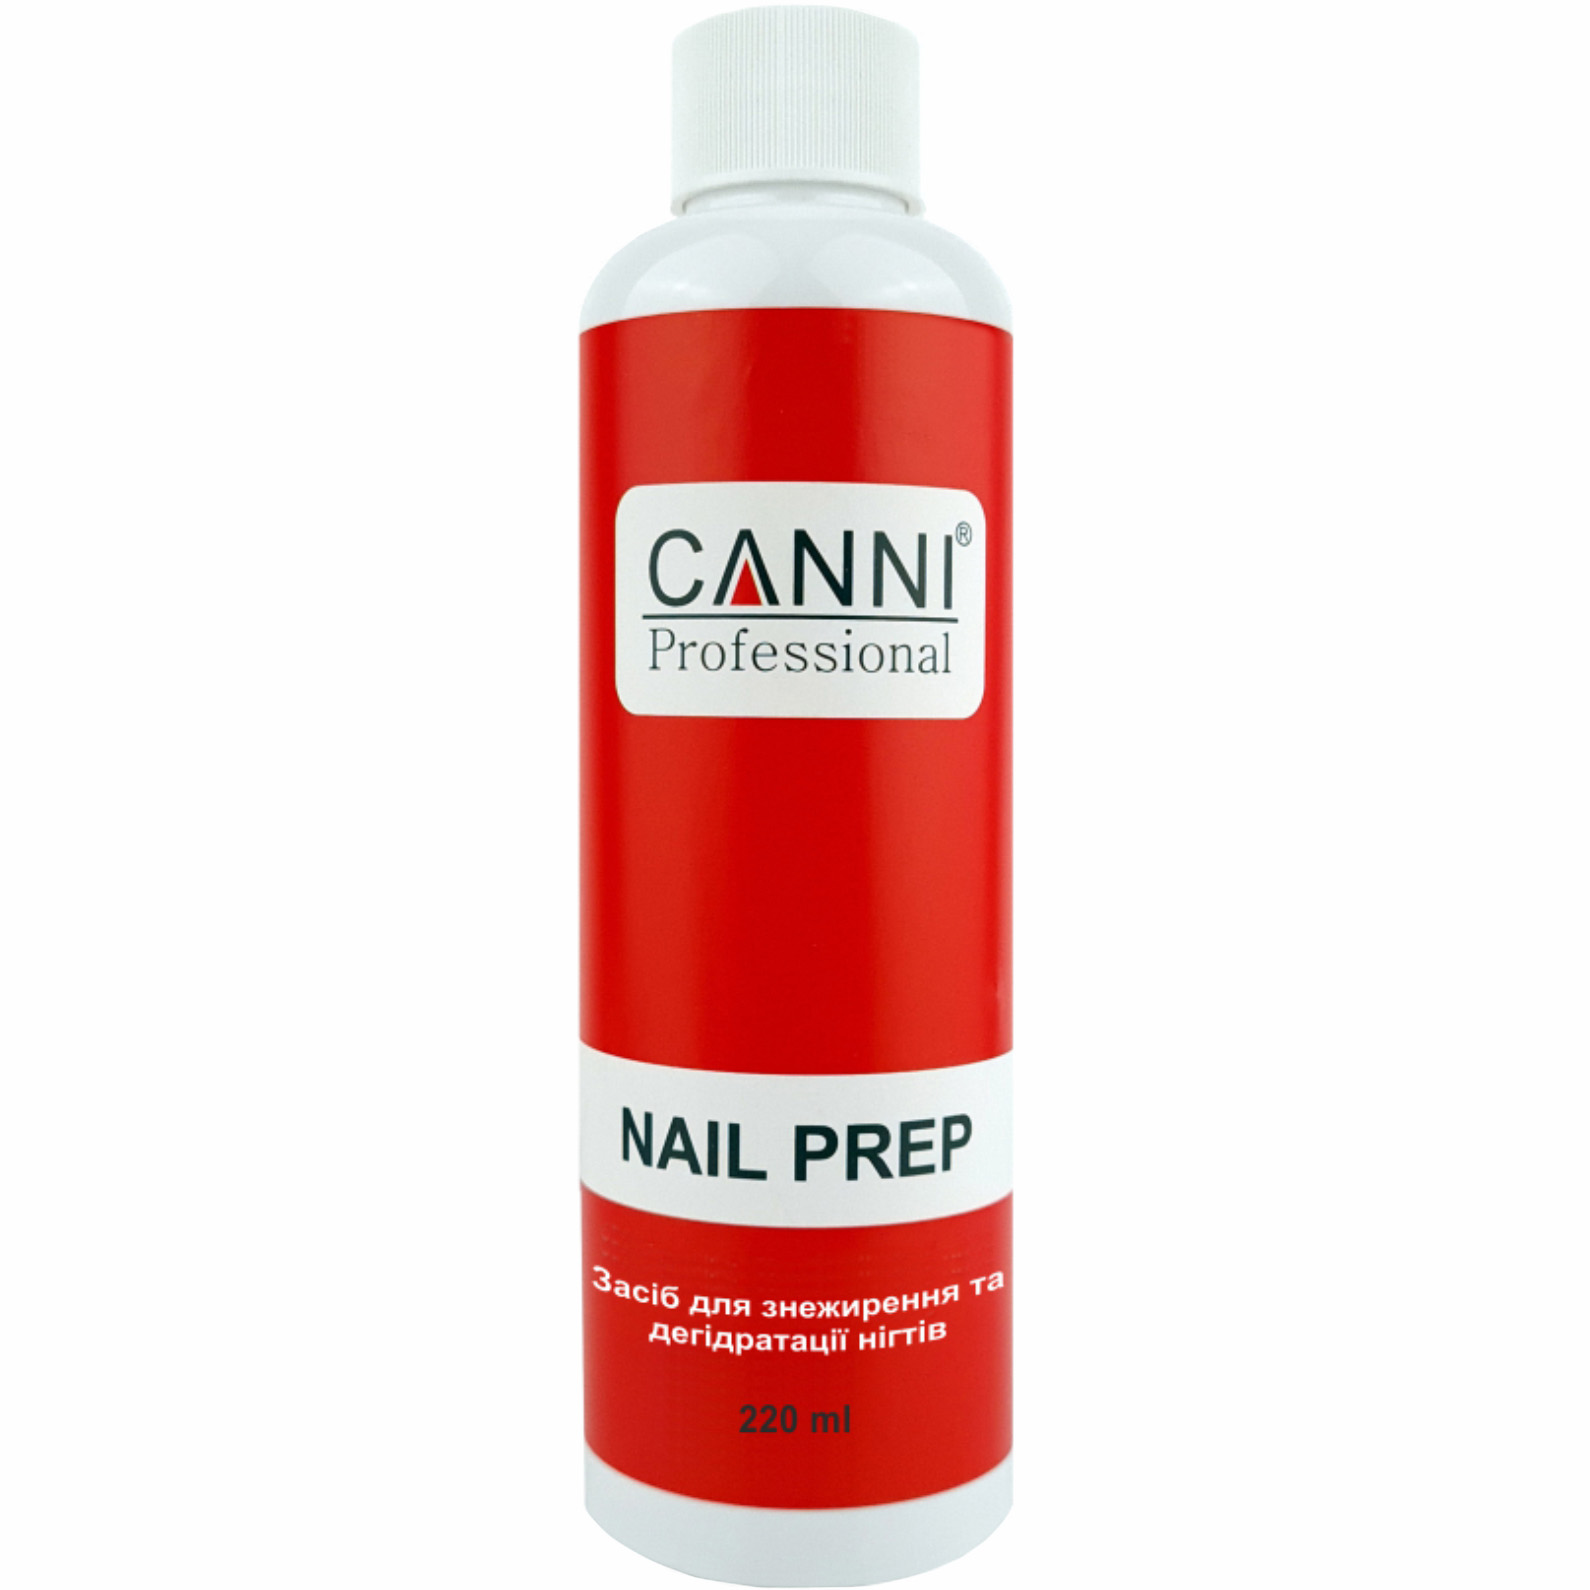 Засіб для знежирення та дегідратації нігтів Canni Nail Prep 220 мл - фото 1